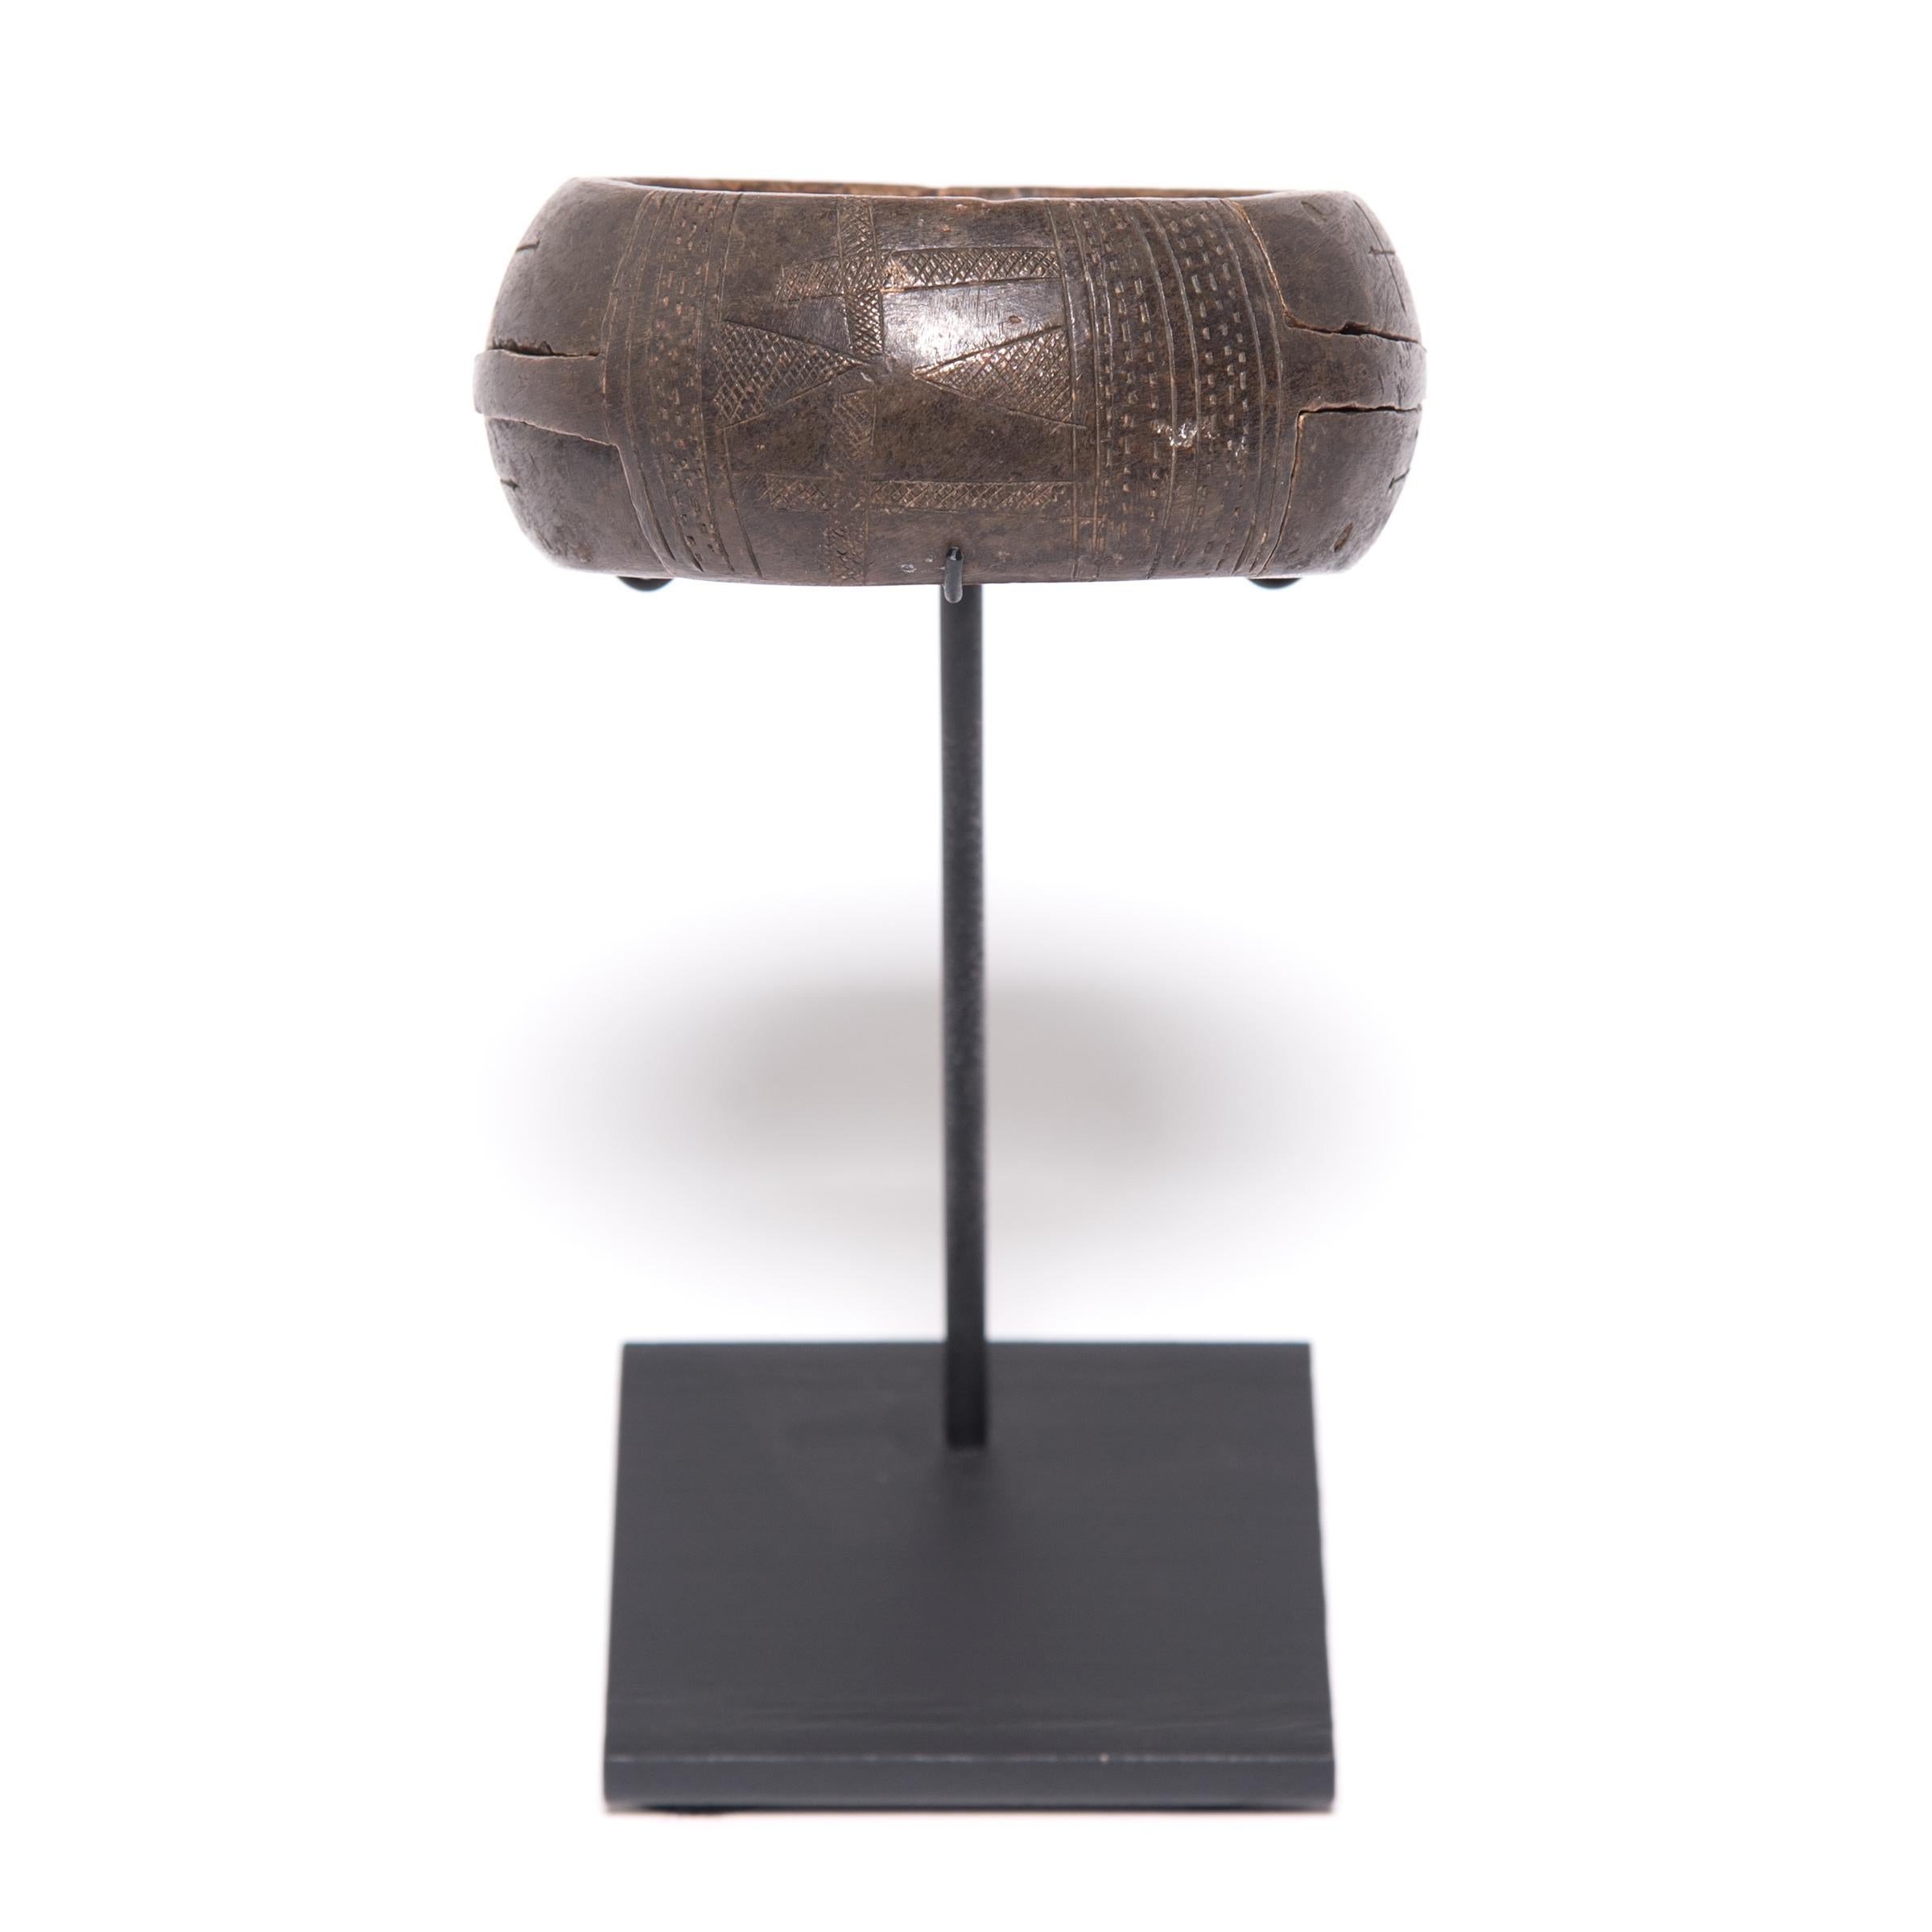 La texture et la forme de cet objet sculptural nigérian en cuivre sont honorées par le temps. La géométrie complexe a été obtenue par un processus connu sous le nom de scarification. L'artisan traçait et retraçait méticuleusement ses sculptures pour